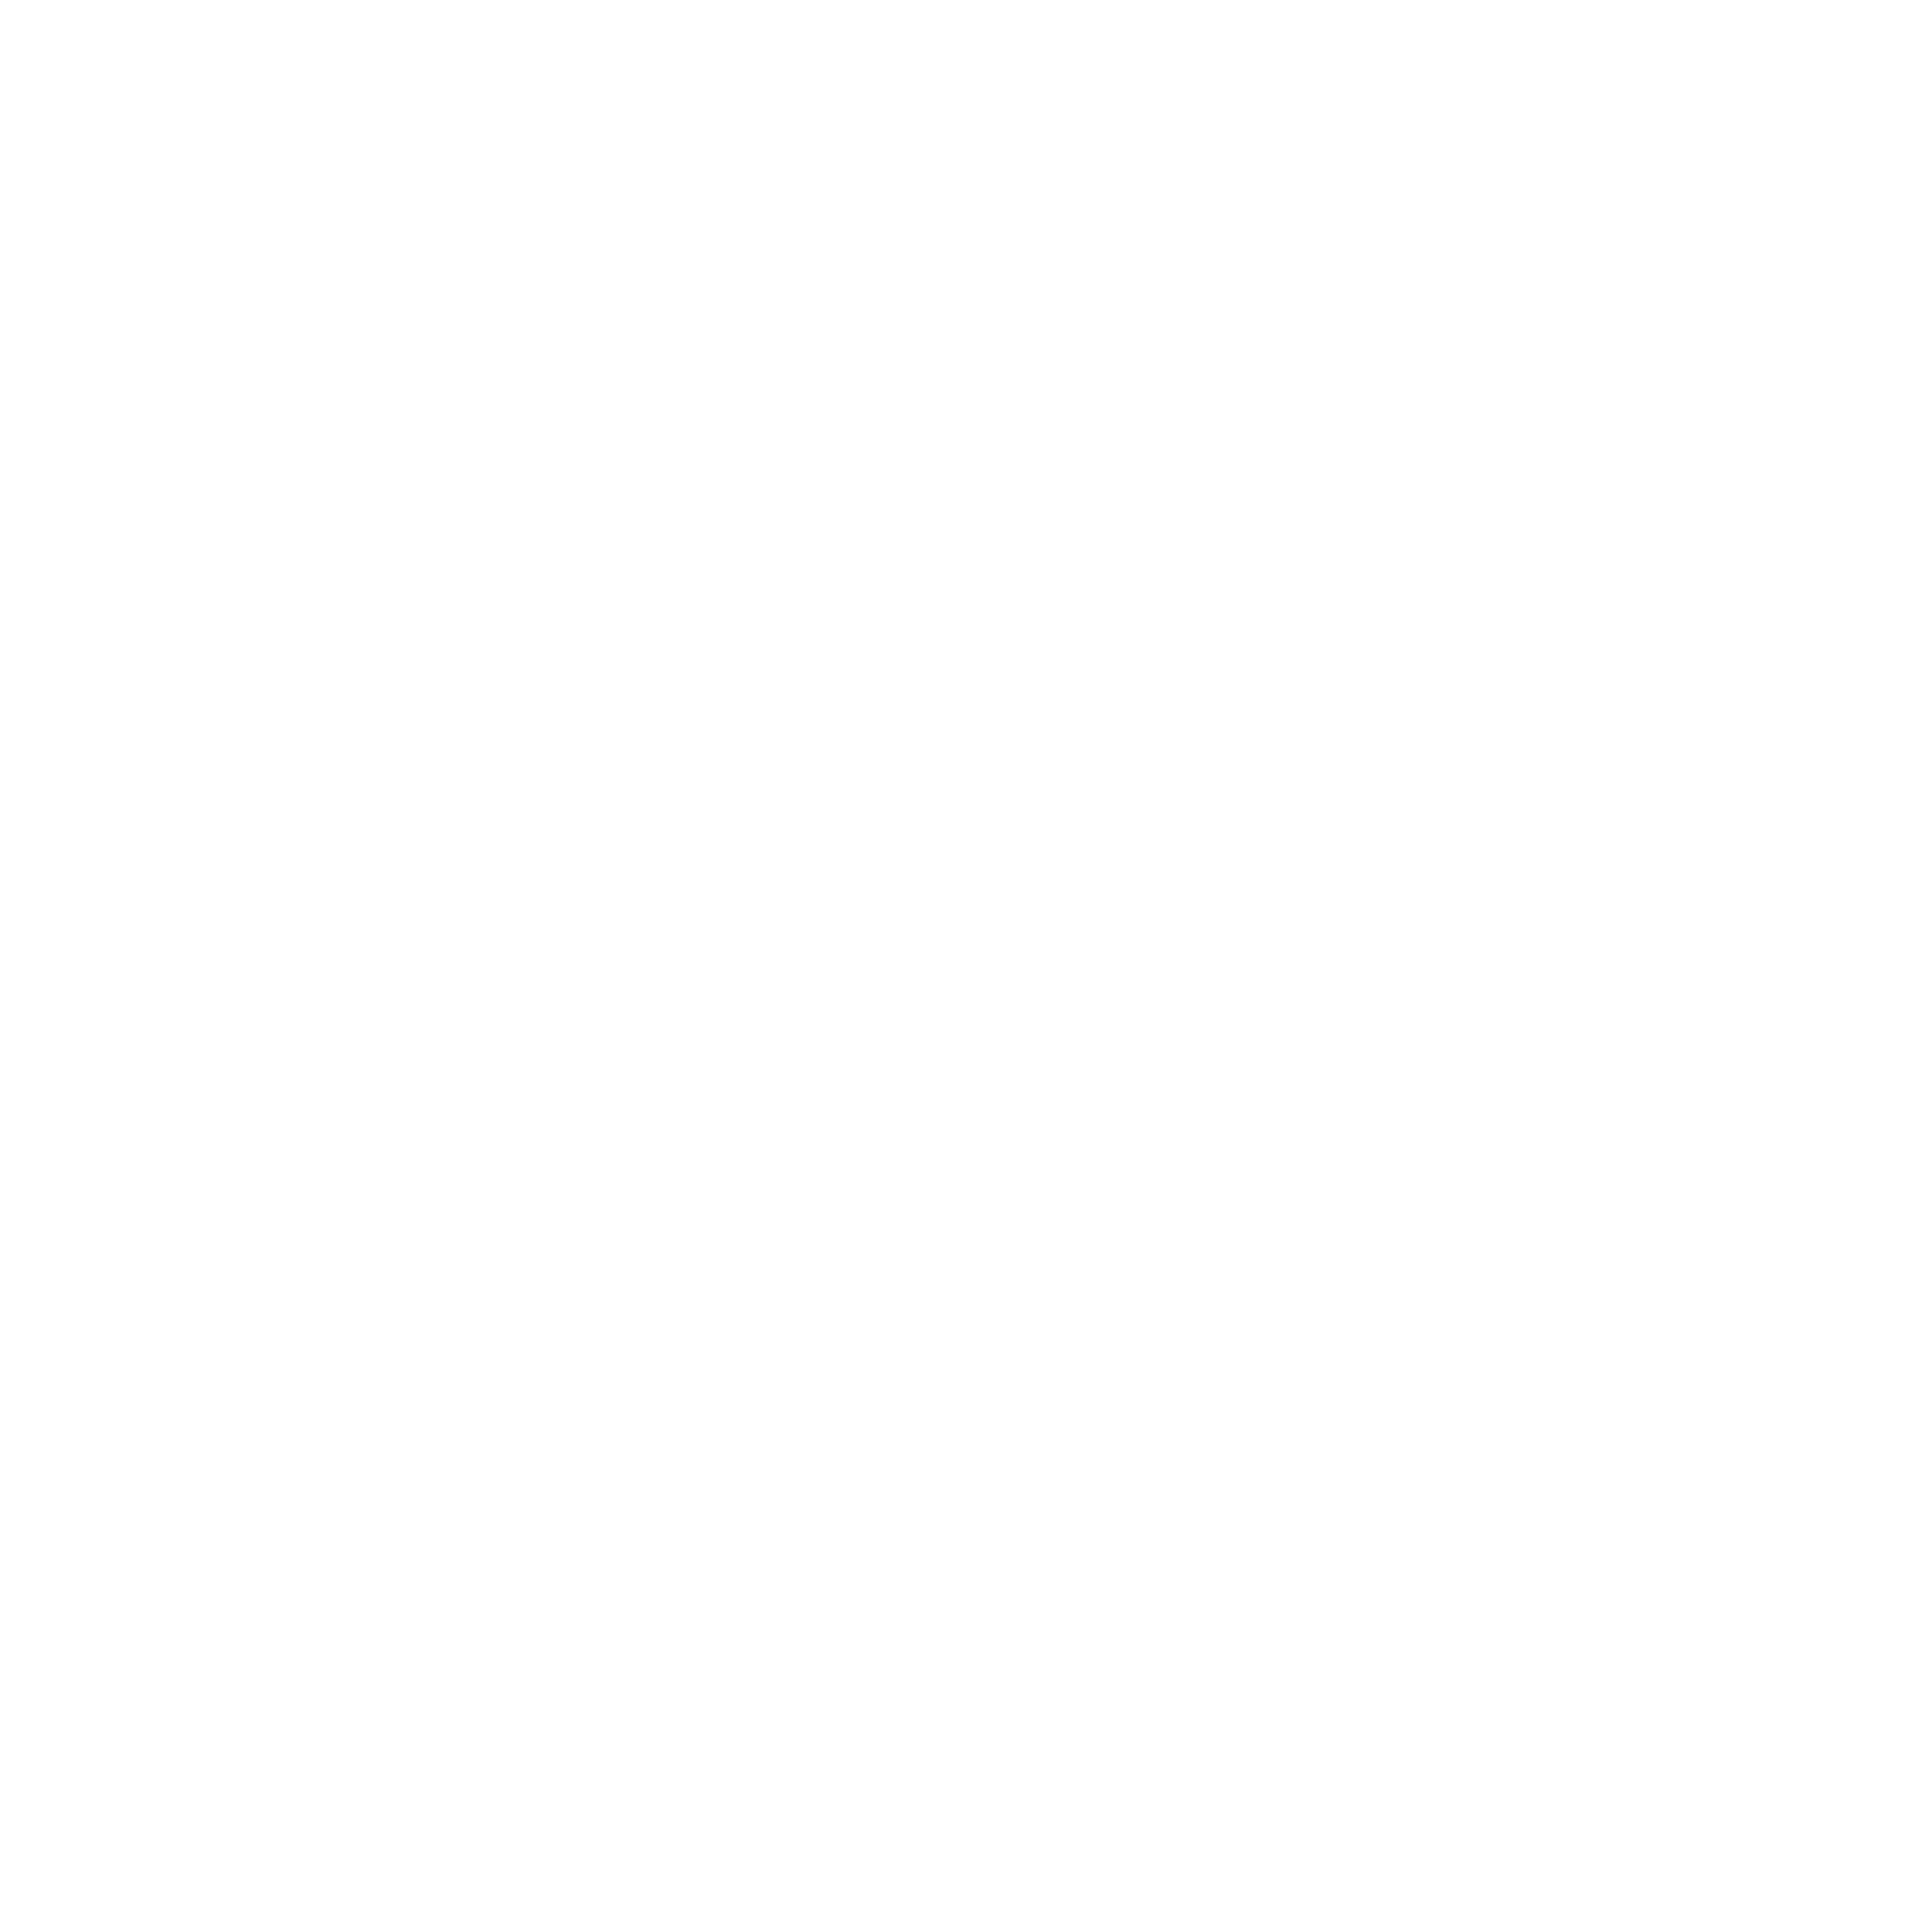 BL debate logo